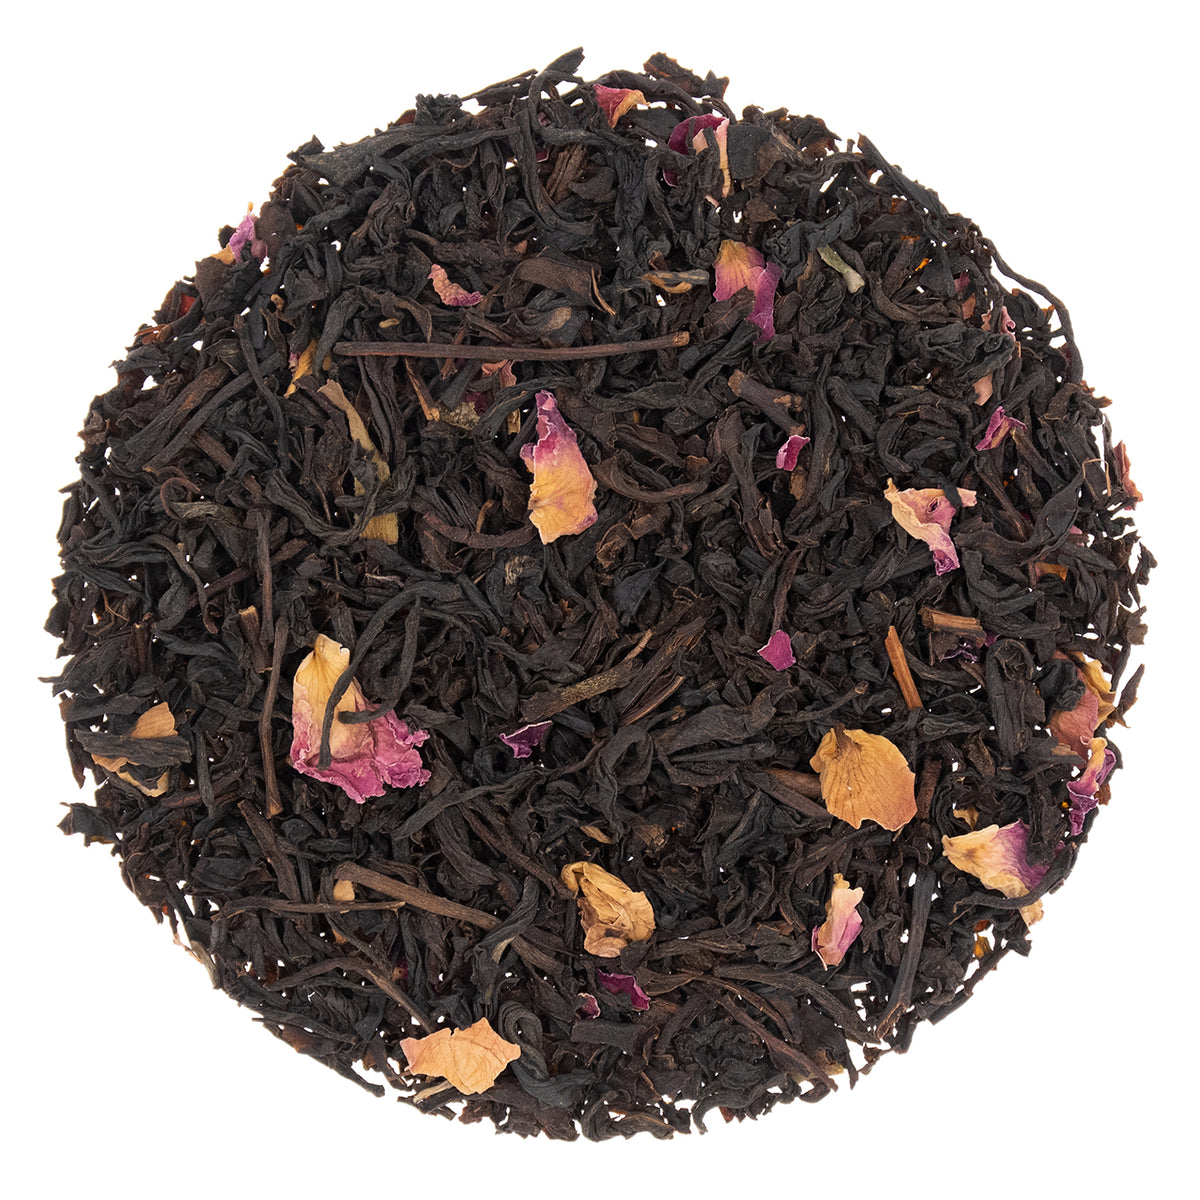 Rose Congou Loose Leaf Tea